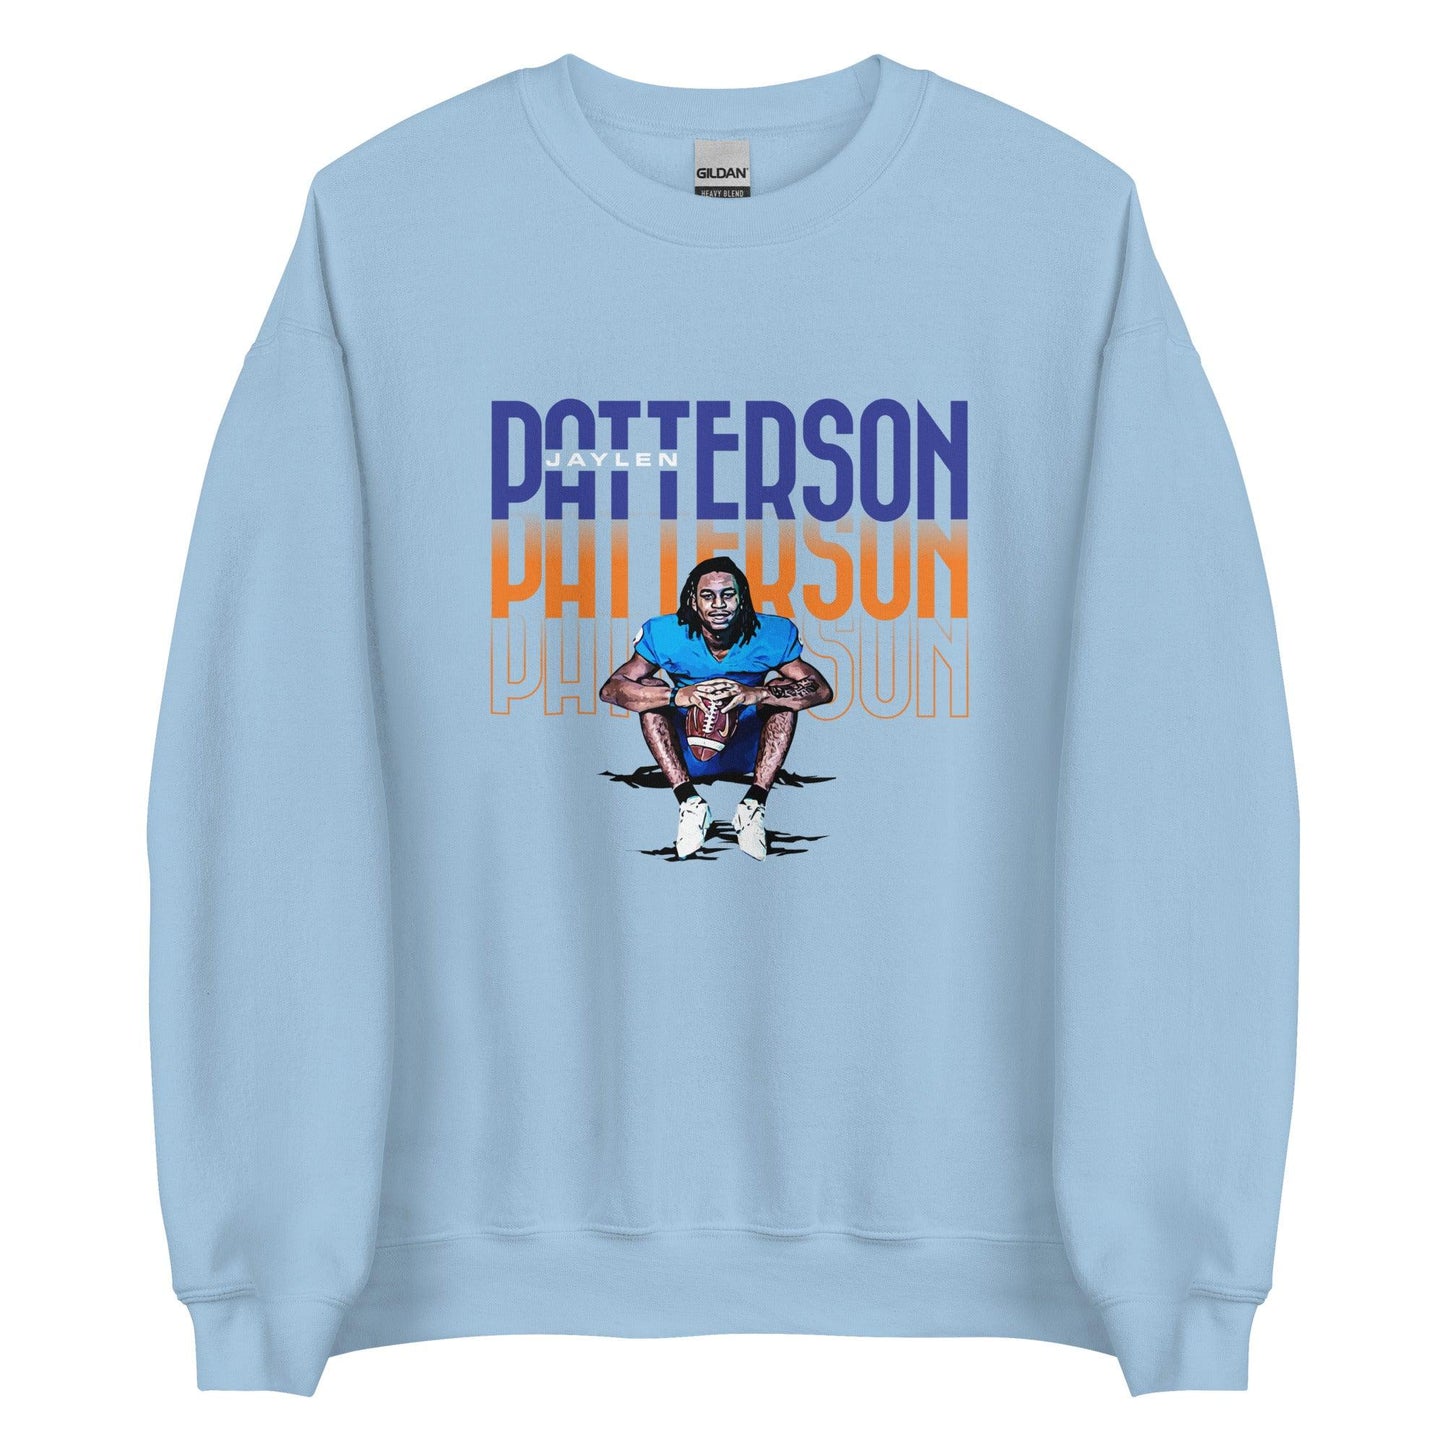 Jaylen Patterson "Gameday" Sweatshirt - Fan Arch